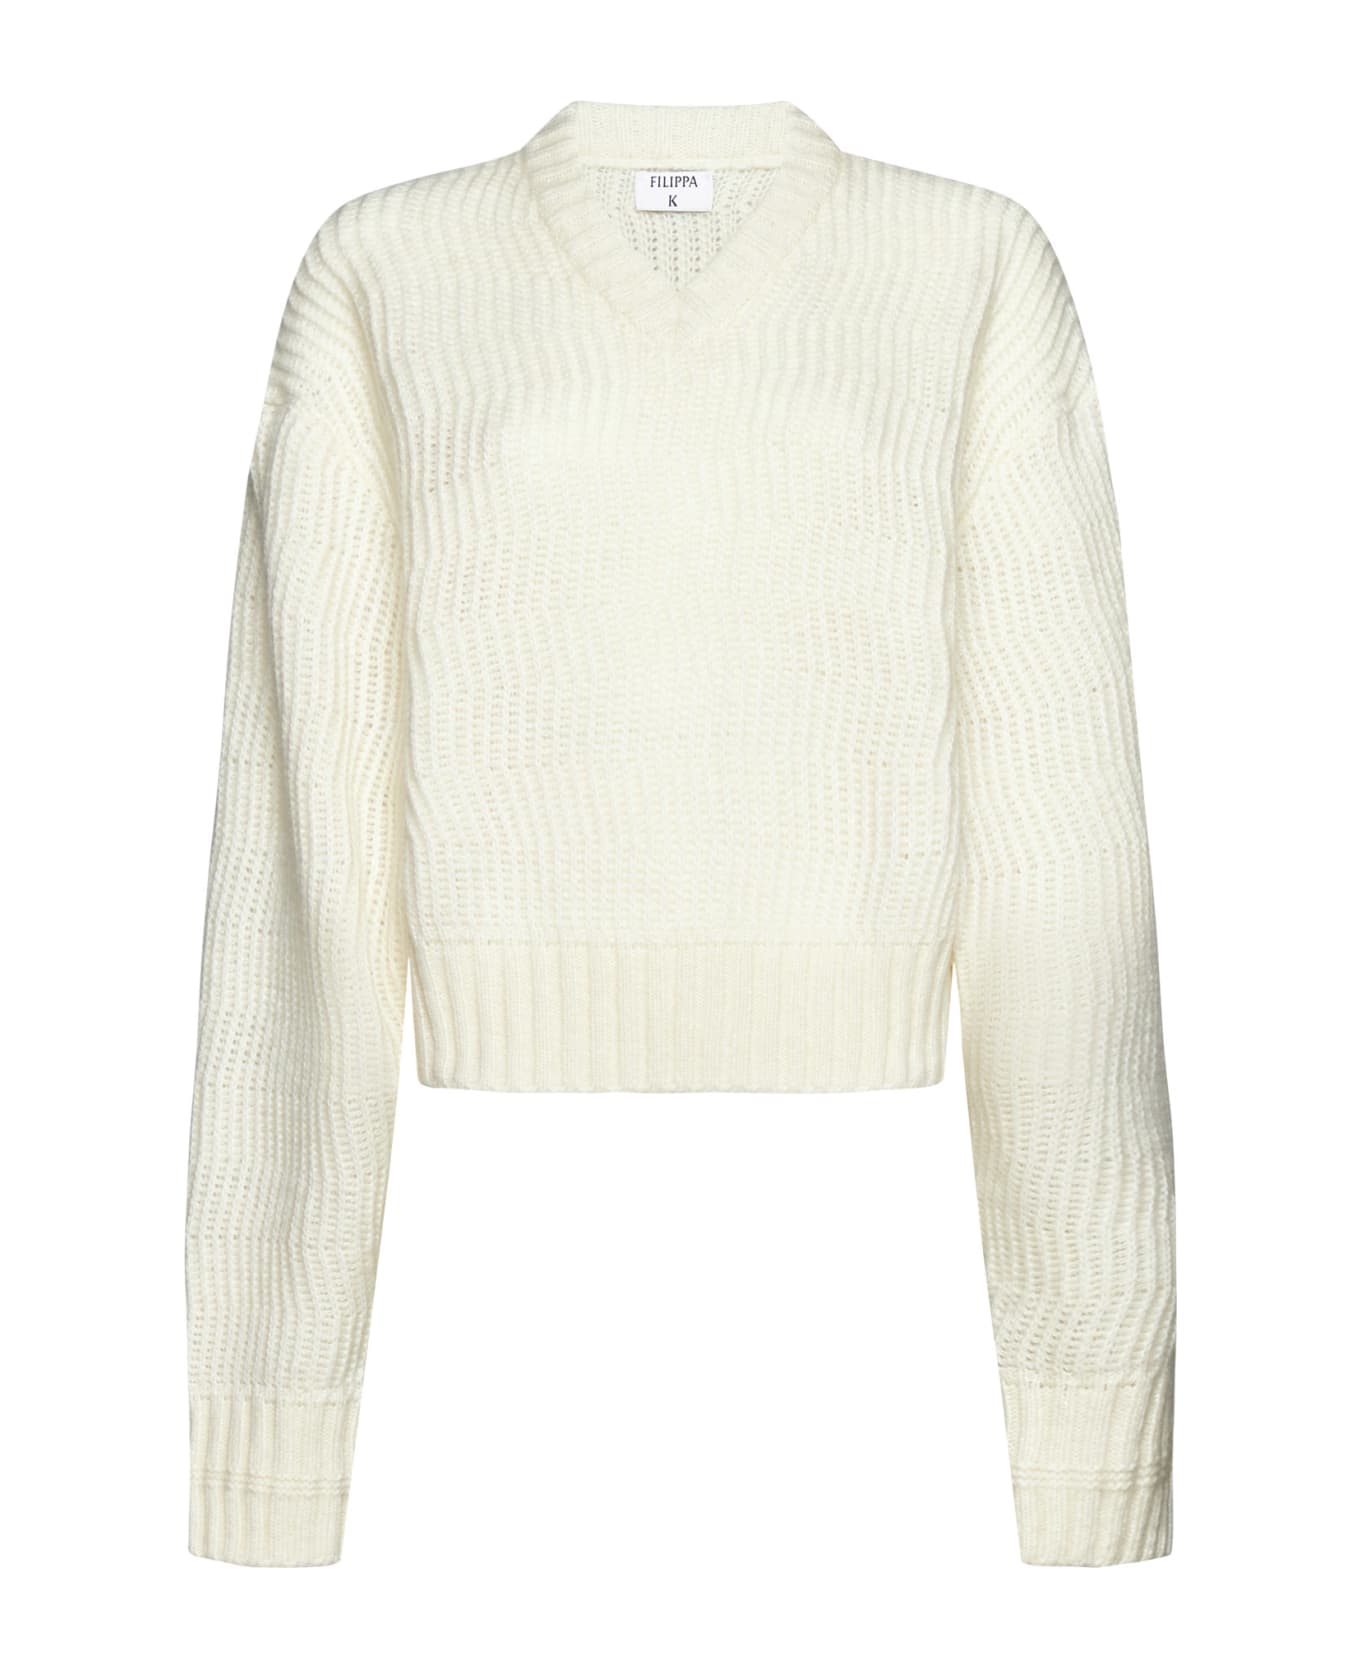 Filippa K Sweater - Winter white